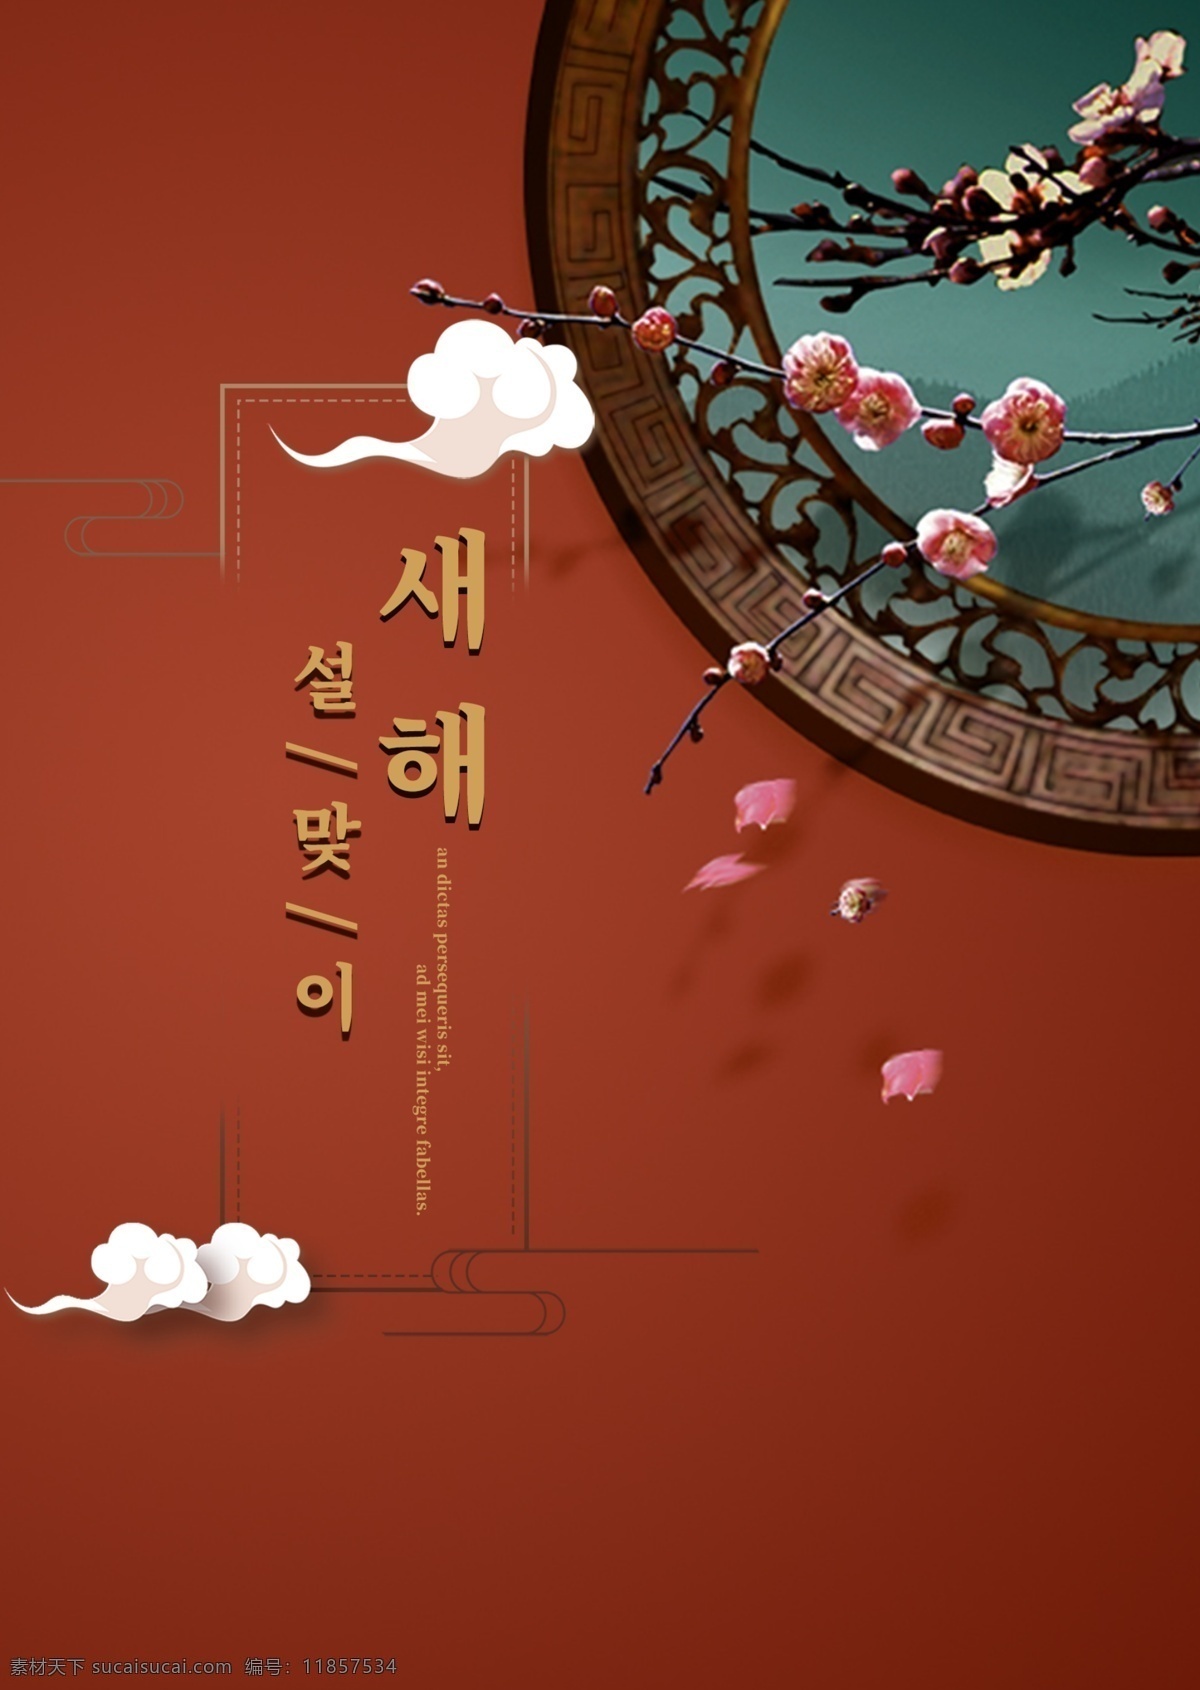 只 简单 手上 深红 纸 迎接 新年 海报 传统节日 食物 云 花 分支 祝你新年快乐 新年的一天 春节 树 韩国 韩国报纸 移动支付 花和叶子 景观